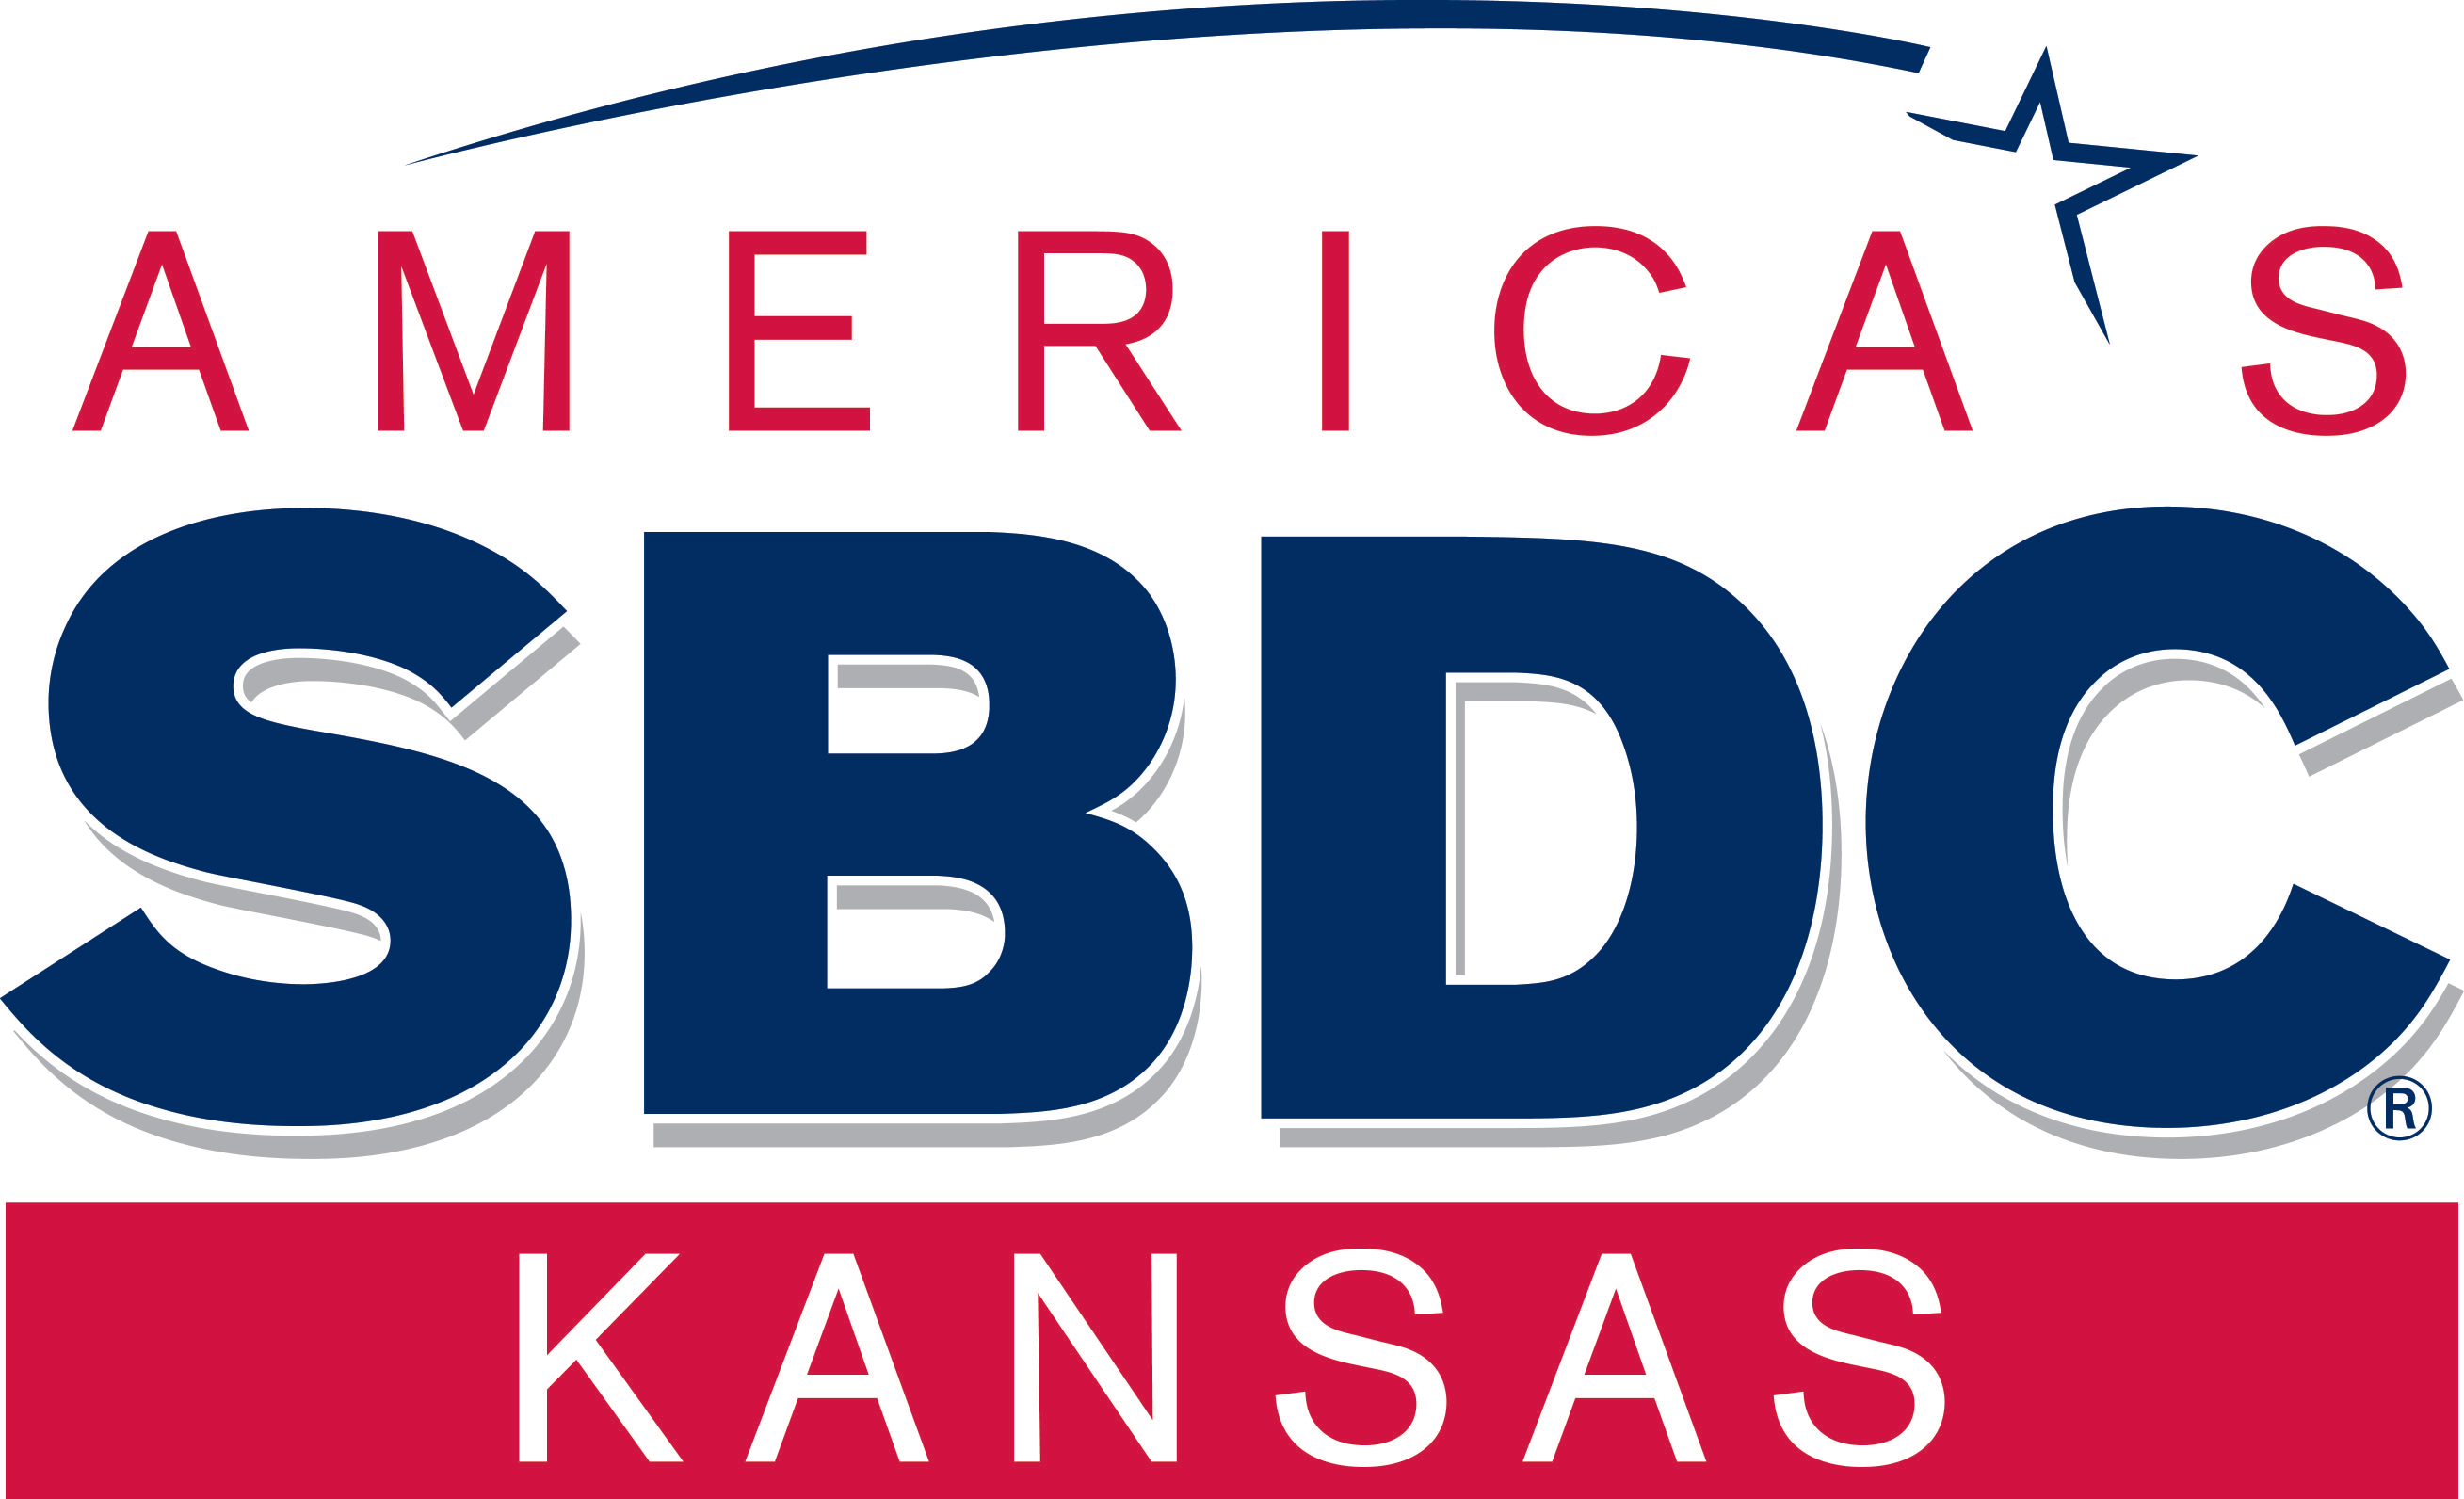 Kansas SBDC logo